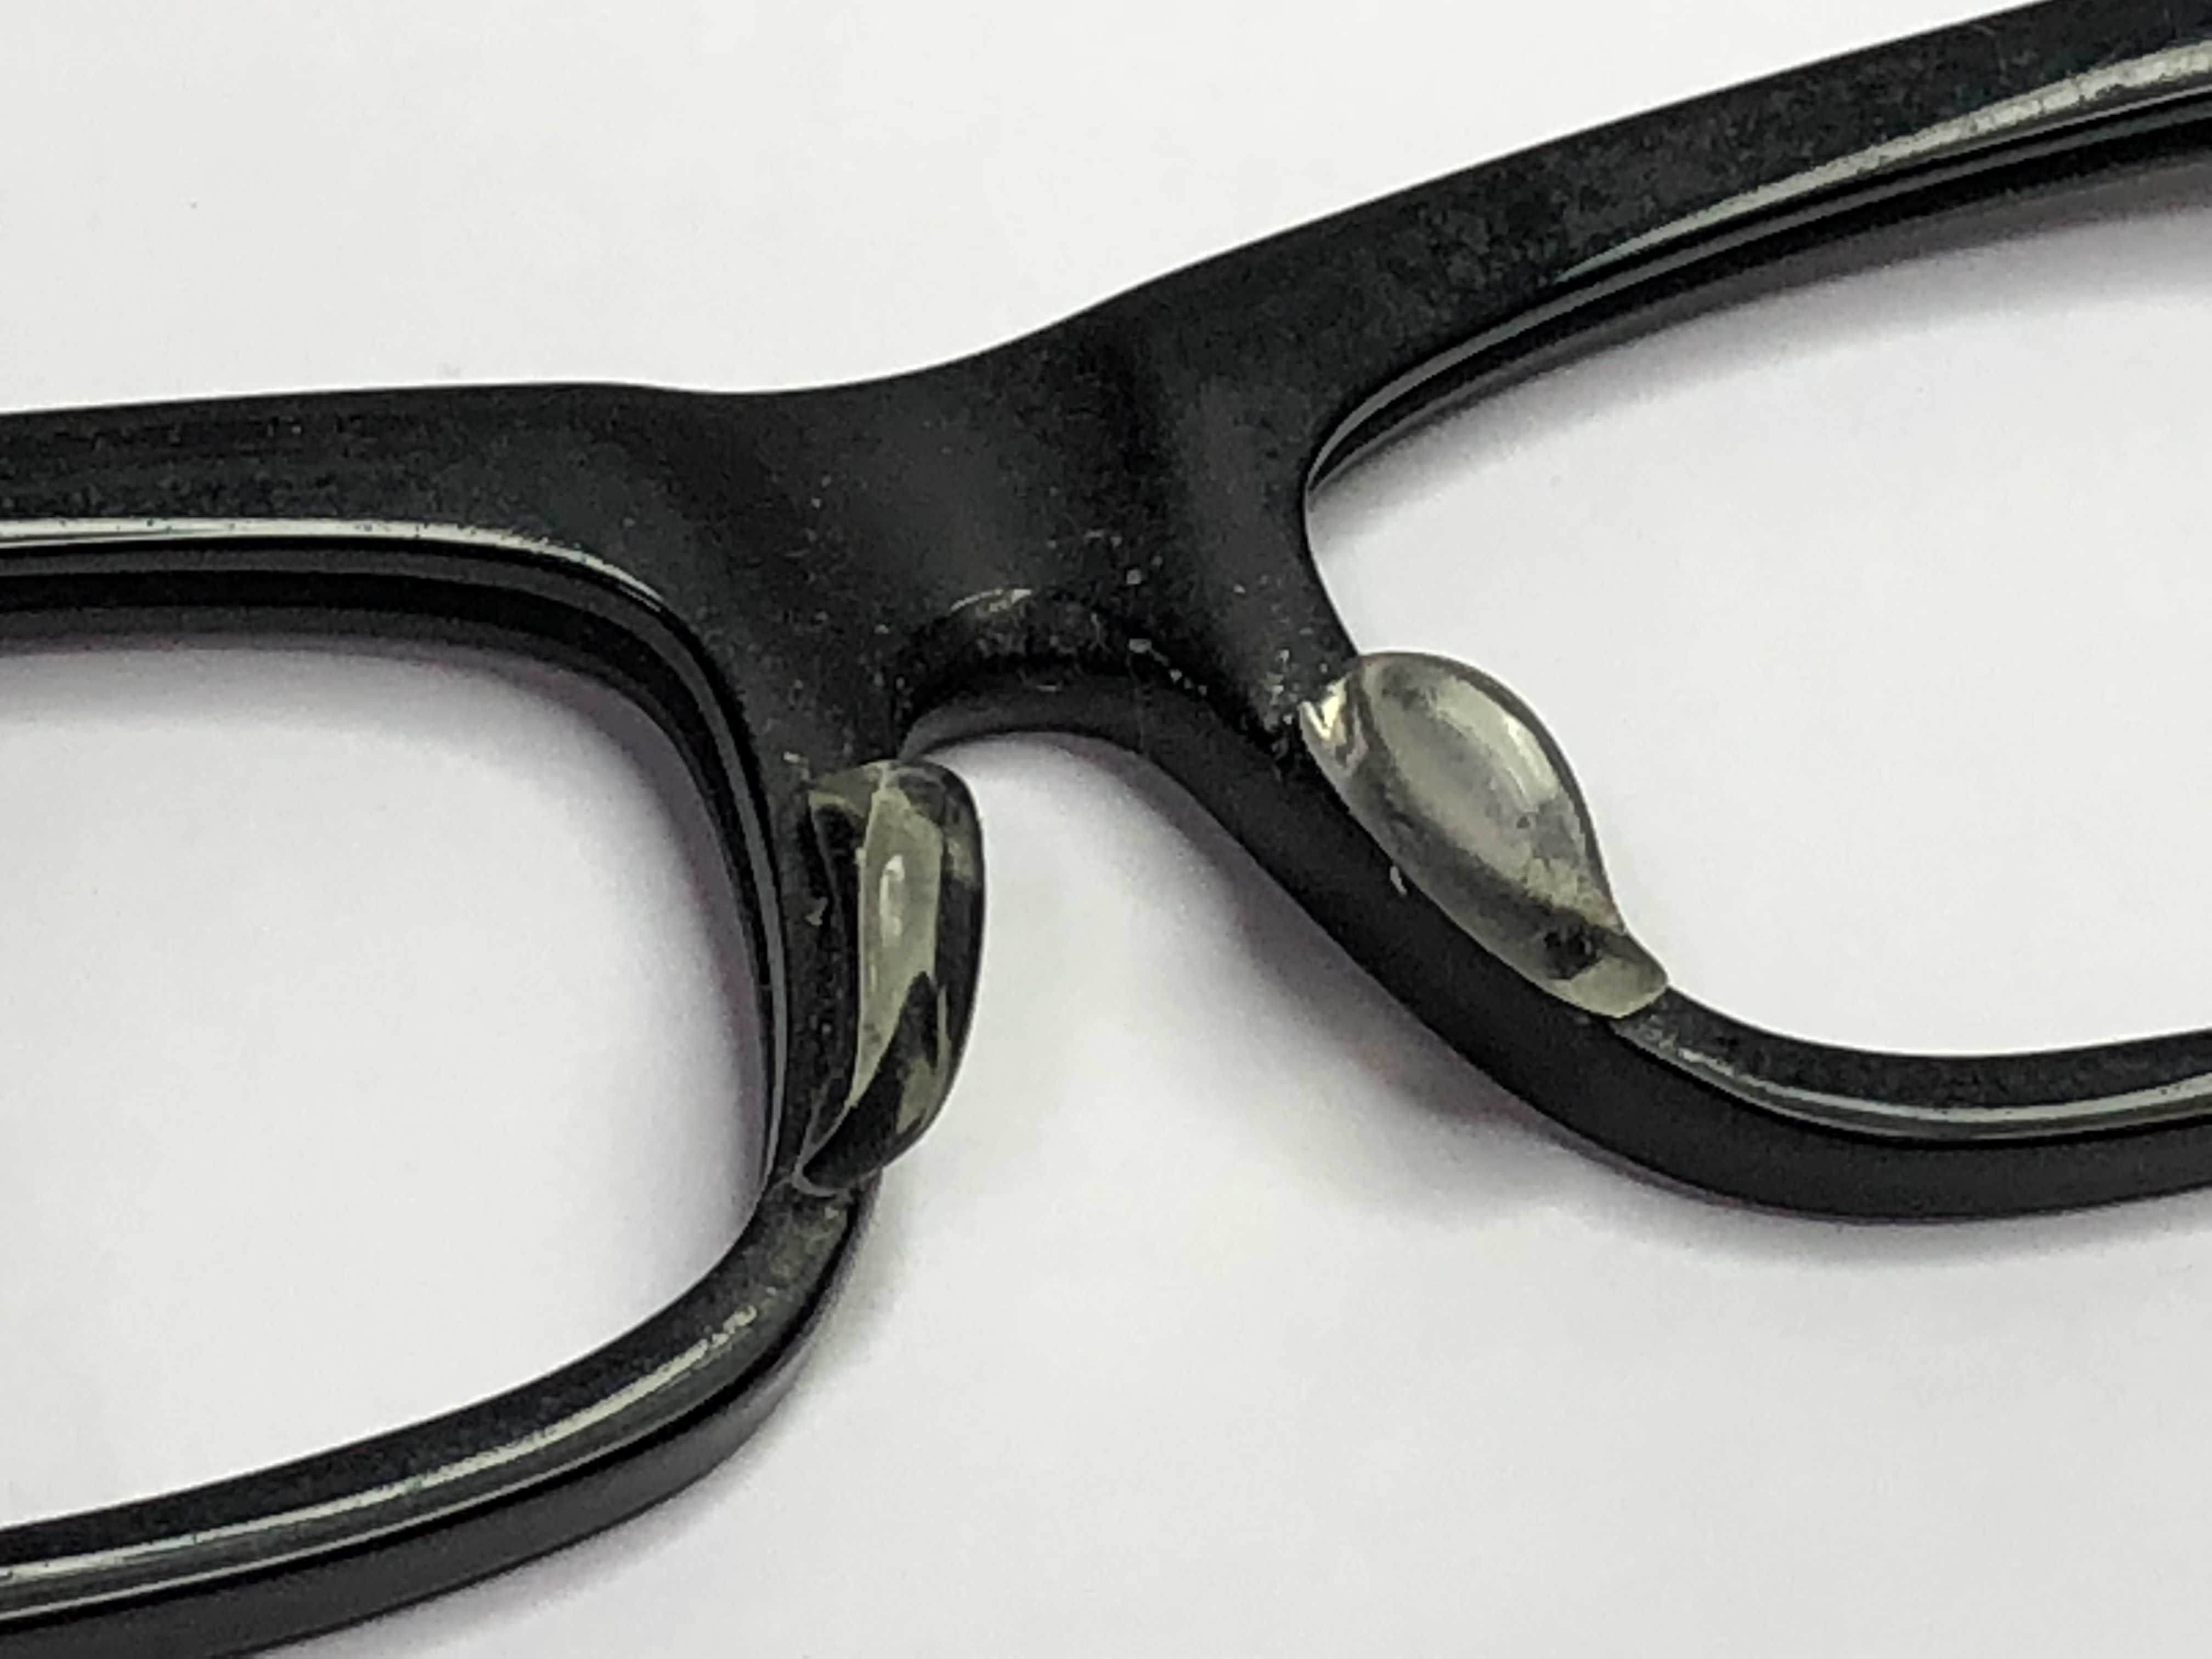 メガネ 眼鏡 レンズ フレーム メタルフレーム 加工 磨き 研磨 眼鏡屋 レンズ艶出機 デラックス型